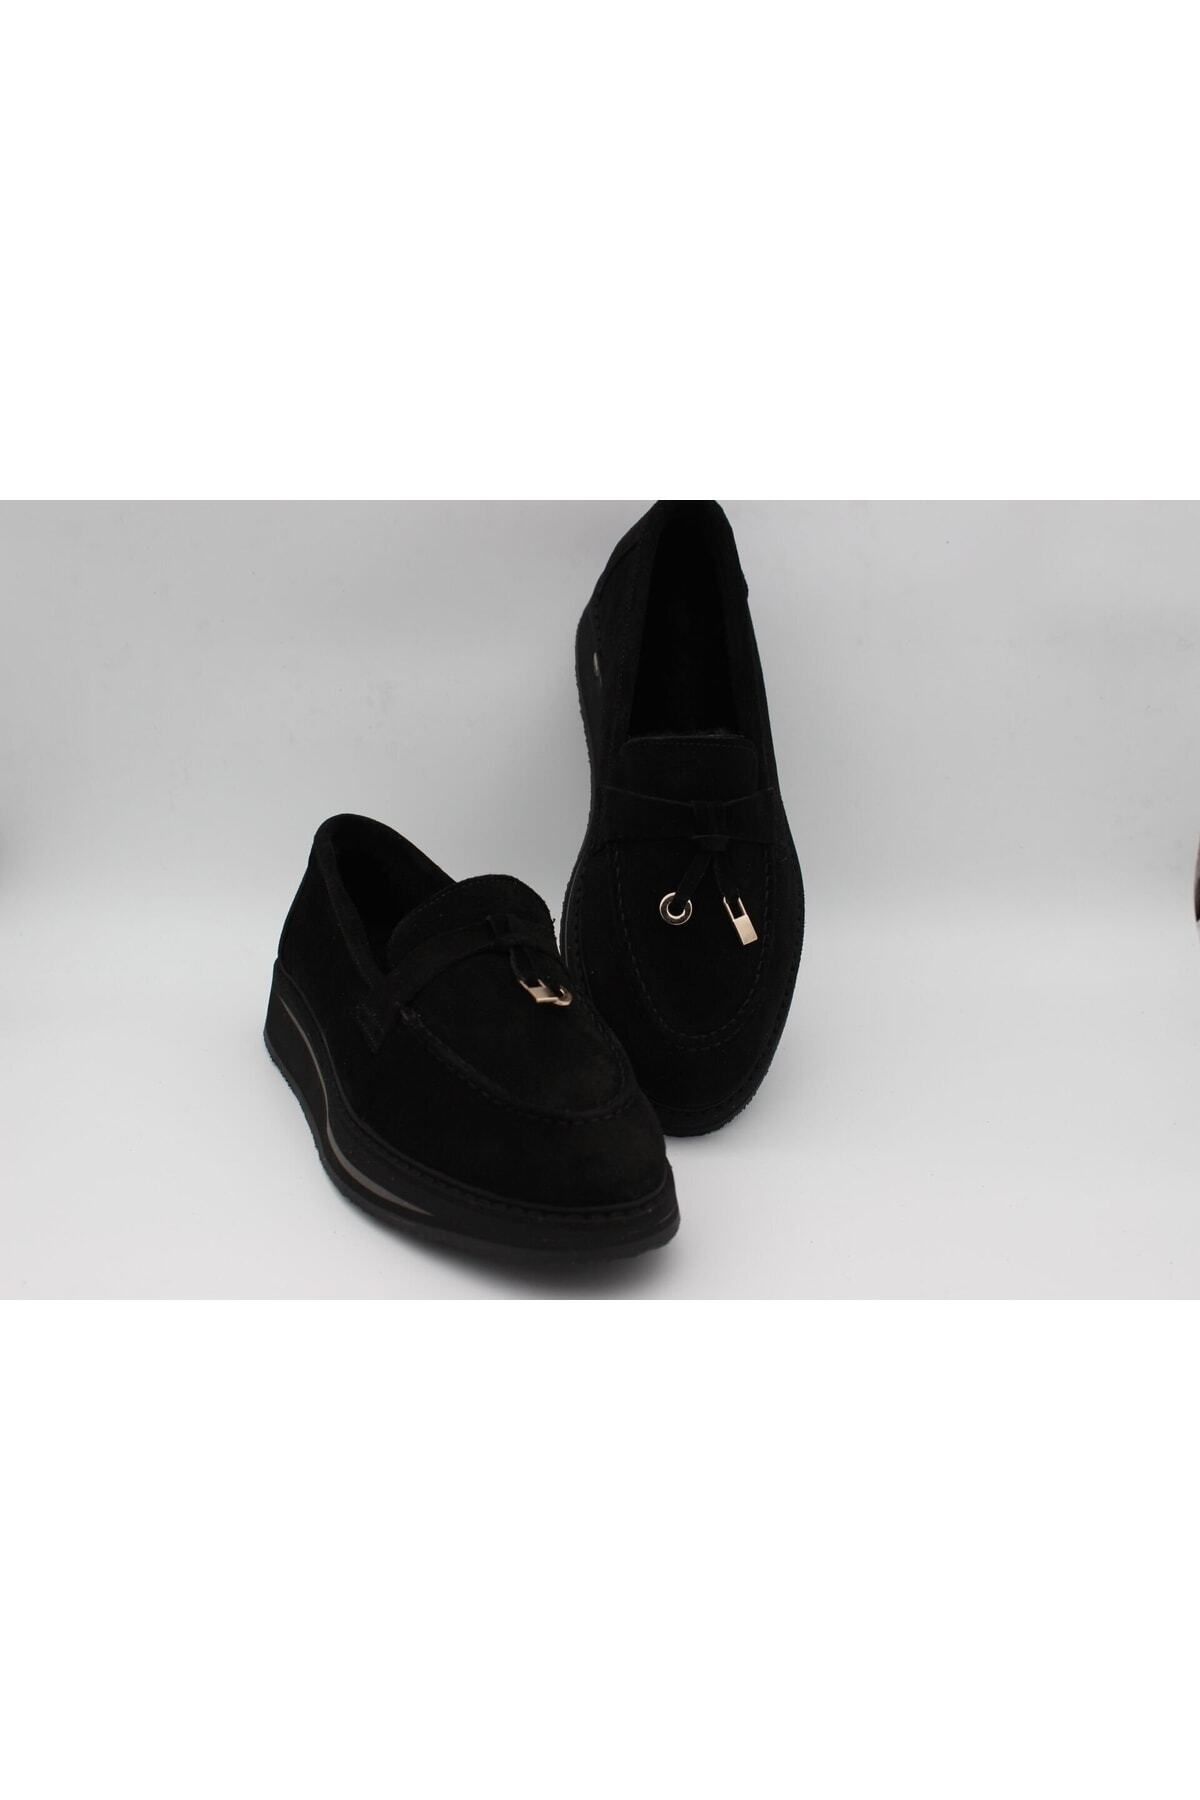 AYAK&KABIM Hakiki Deri Siyah Kadın Ayakkabı Loafer Makosen Deri Günlük Tokalı Krklüloafer-252501